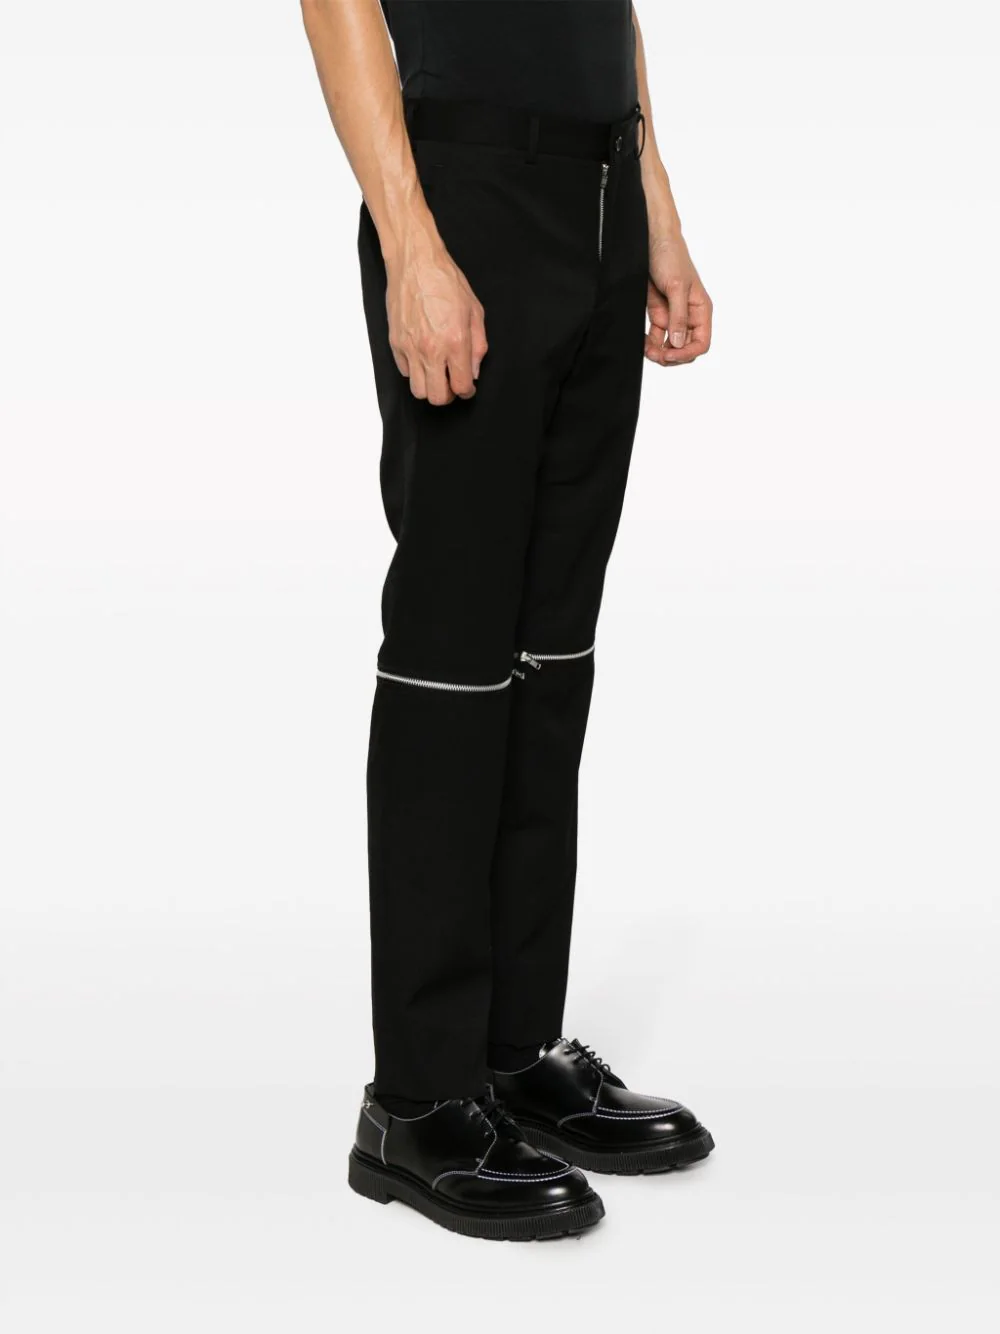 Men's Fleece Casual Sports Track Pants w Zip Pocket Striped Sweat Trousers  S-6XL | eBay